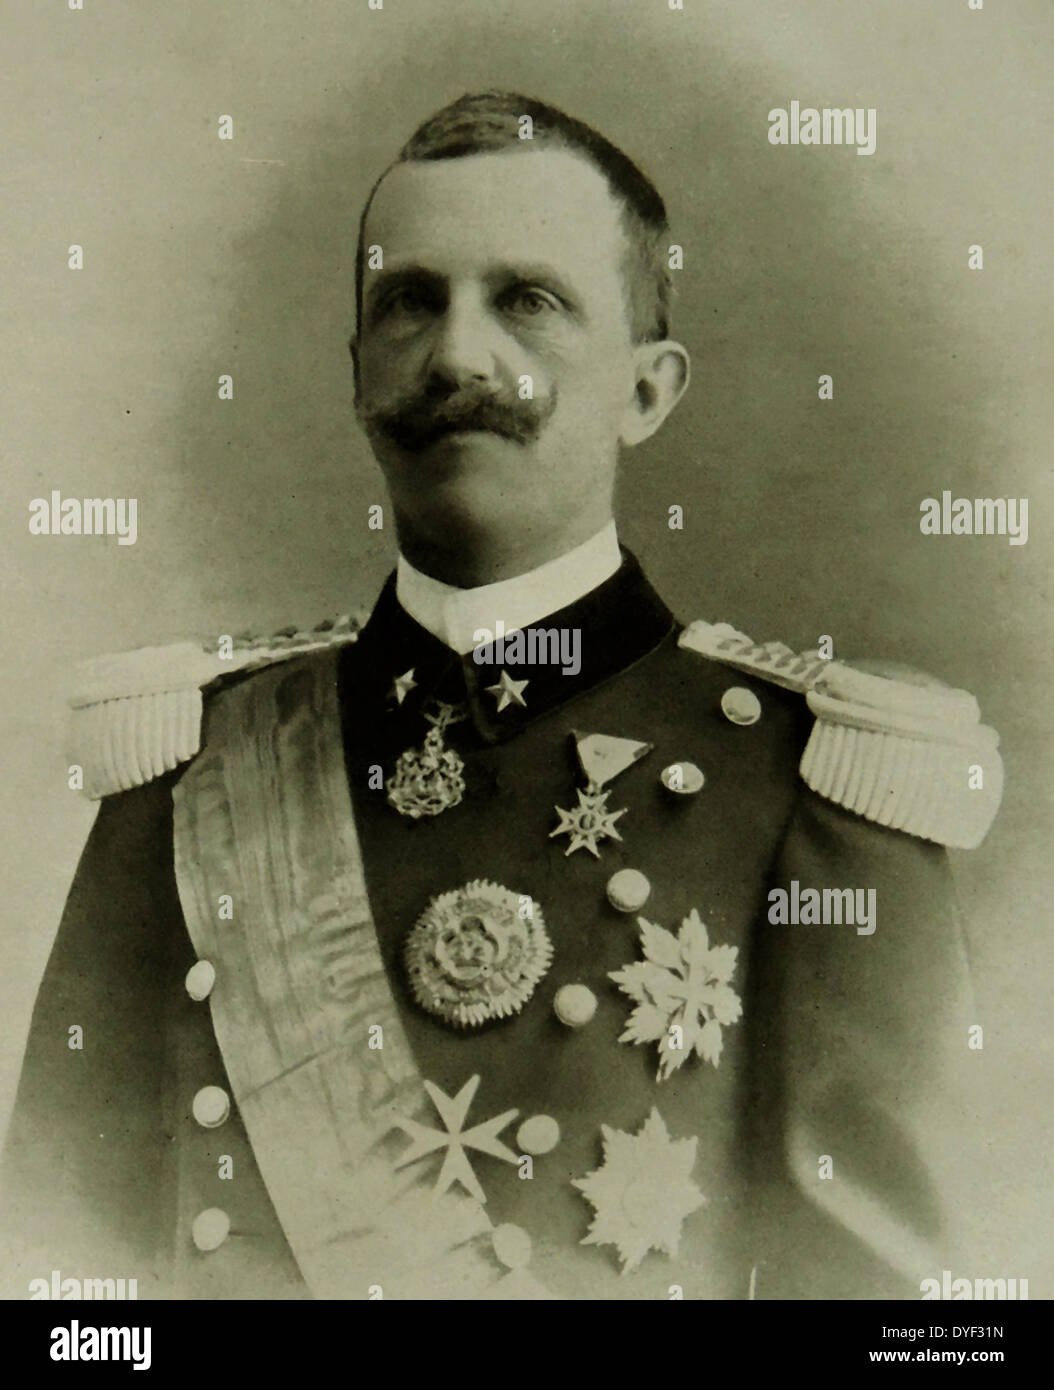 Viktor Emanuel III. von Italien, 1869 - 1947. Mitglied des Hauses Savoyen und König von Italien (29. Juli 1900 - 9. Mai 1946). Außerdem behauptete er, die Throne von Äthiopien und Albanien als Kaiser von Äthiopien (1936-41) und der König der Albaner (1939-43), die von den Großmächten nicht erkannt wurden. Während seiner langen Regierungszeit (46 Jahre), der nach der Ermordung seines Vaters Umberto I, dem Königreich Italien in zwei Weltkriegen beteiligt wurde begonnen. Seine Regierungszeit umfasste auch die Geburt, Aufstieg und Fall des italienischen Faschismus. 1905 Stockfoto